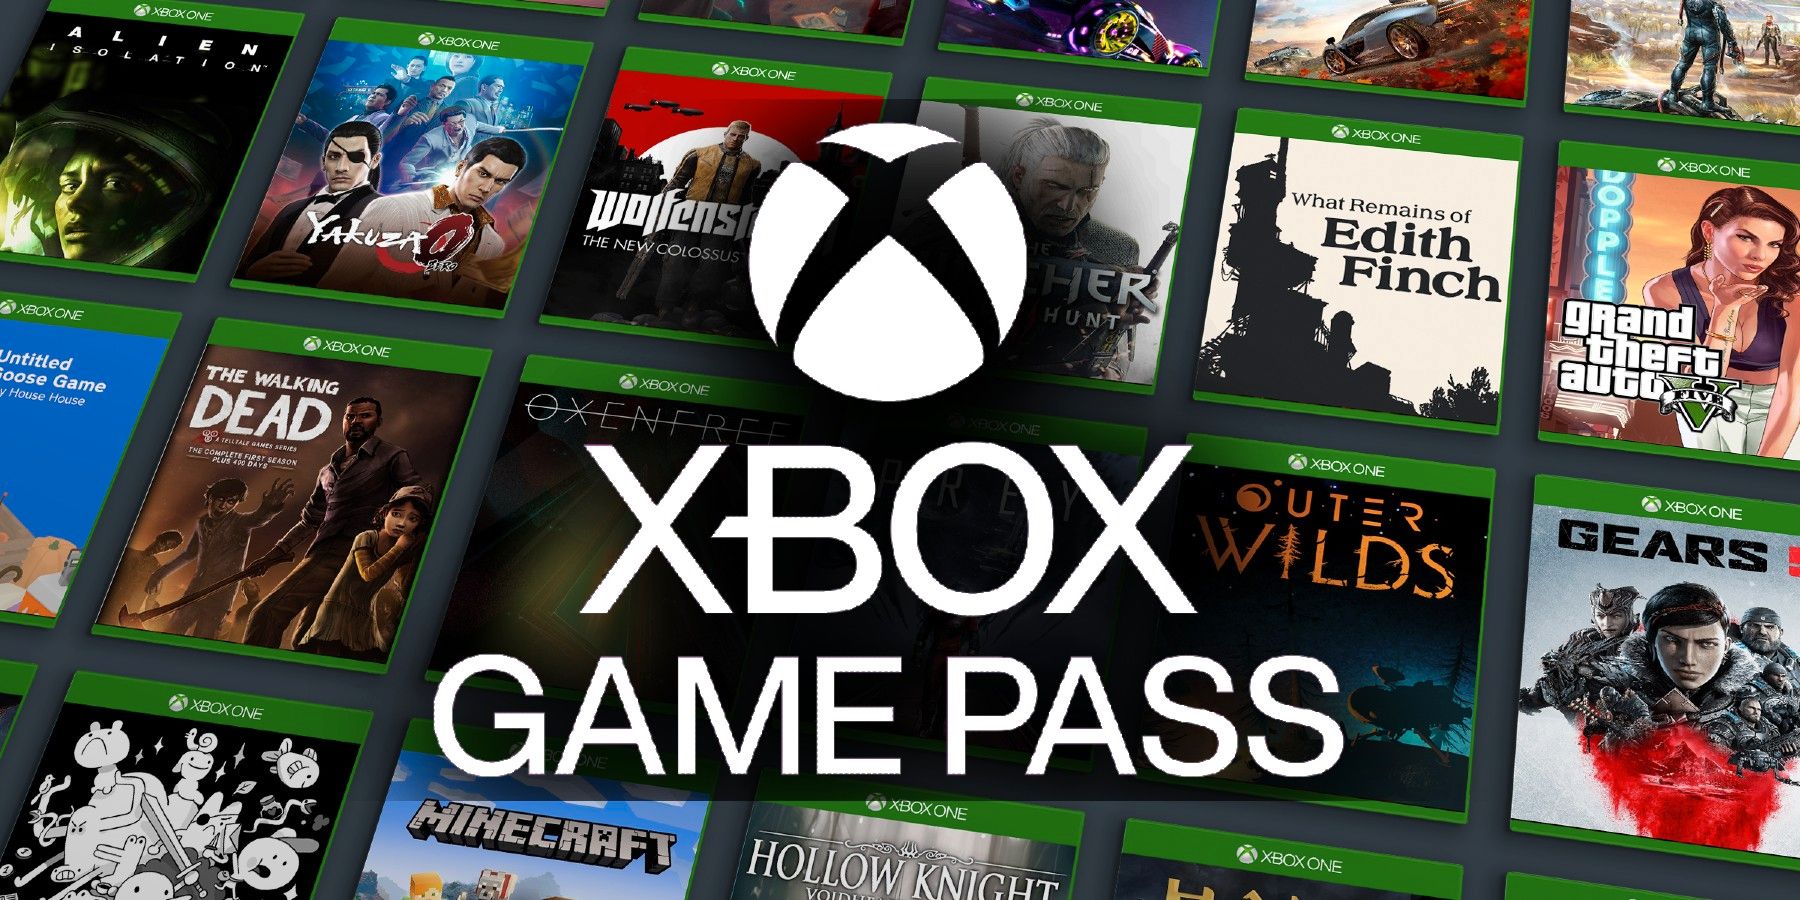 マスターリストは、Xboxゲームパスに掲載されたすべてのゲームと、どのゲームが途中にあるかを示しています